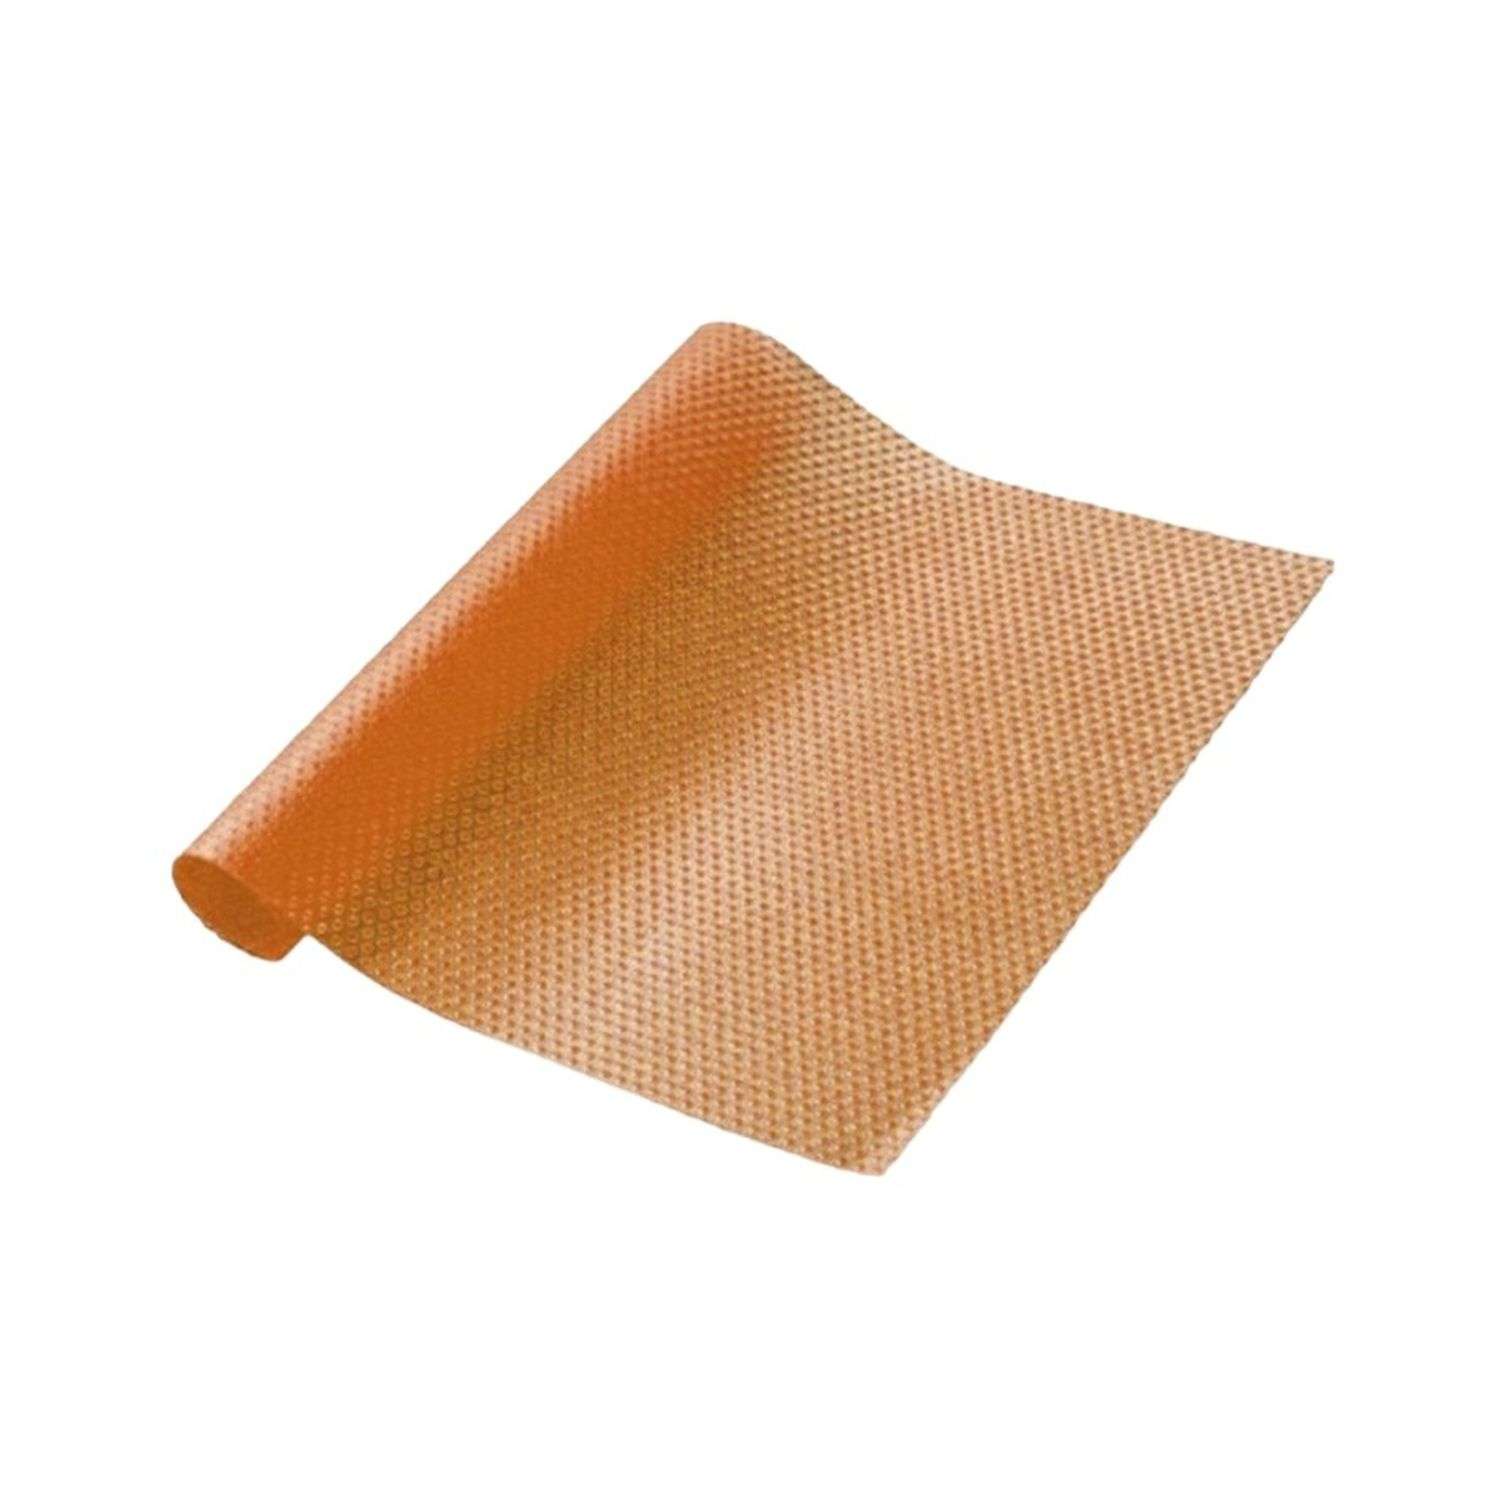 Кухонный коврик - подстилка Uniglodis многофункциональный 30х45 см оранжевый - фото 2